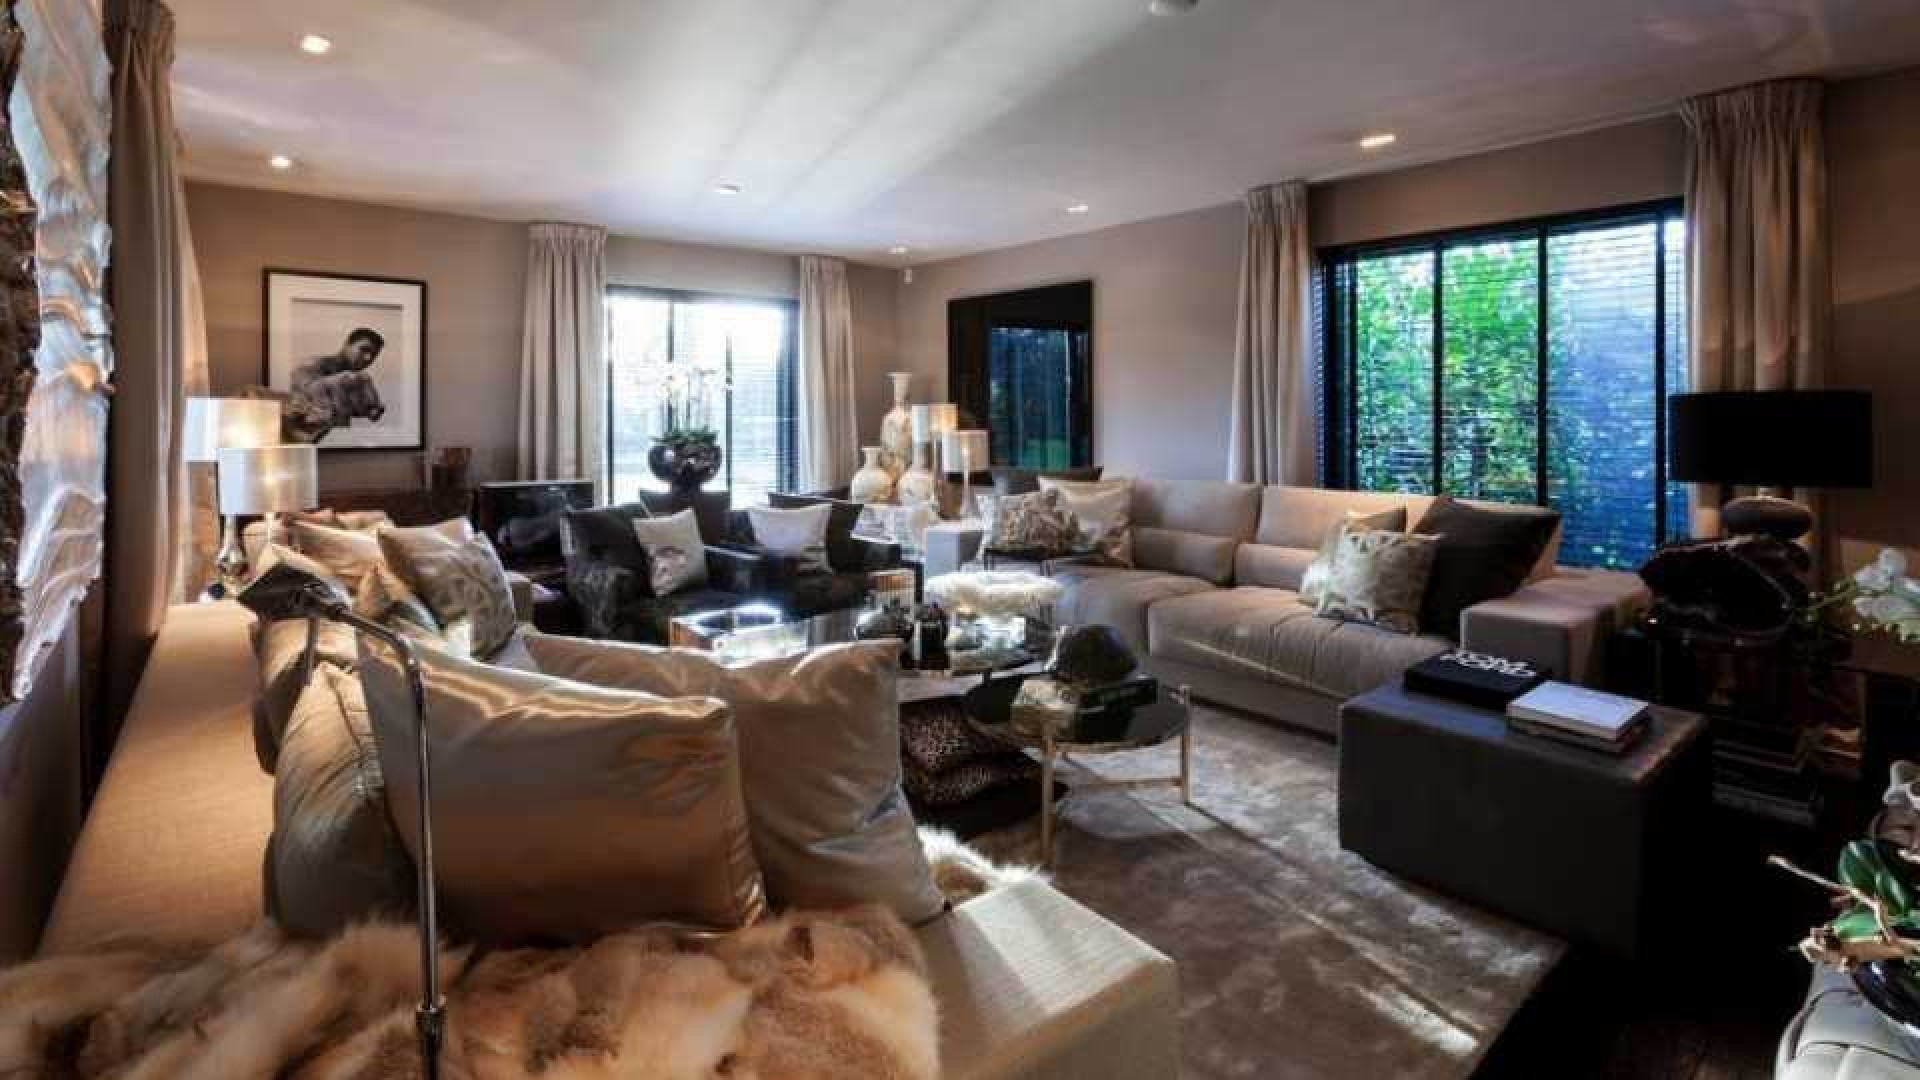 Top interieur stylist Eric Kuster zet zijn eigen droomvilla te koop. Zie foto's